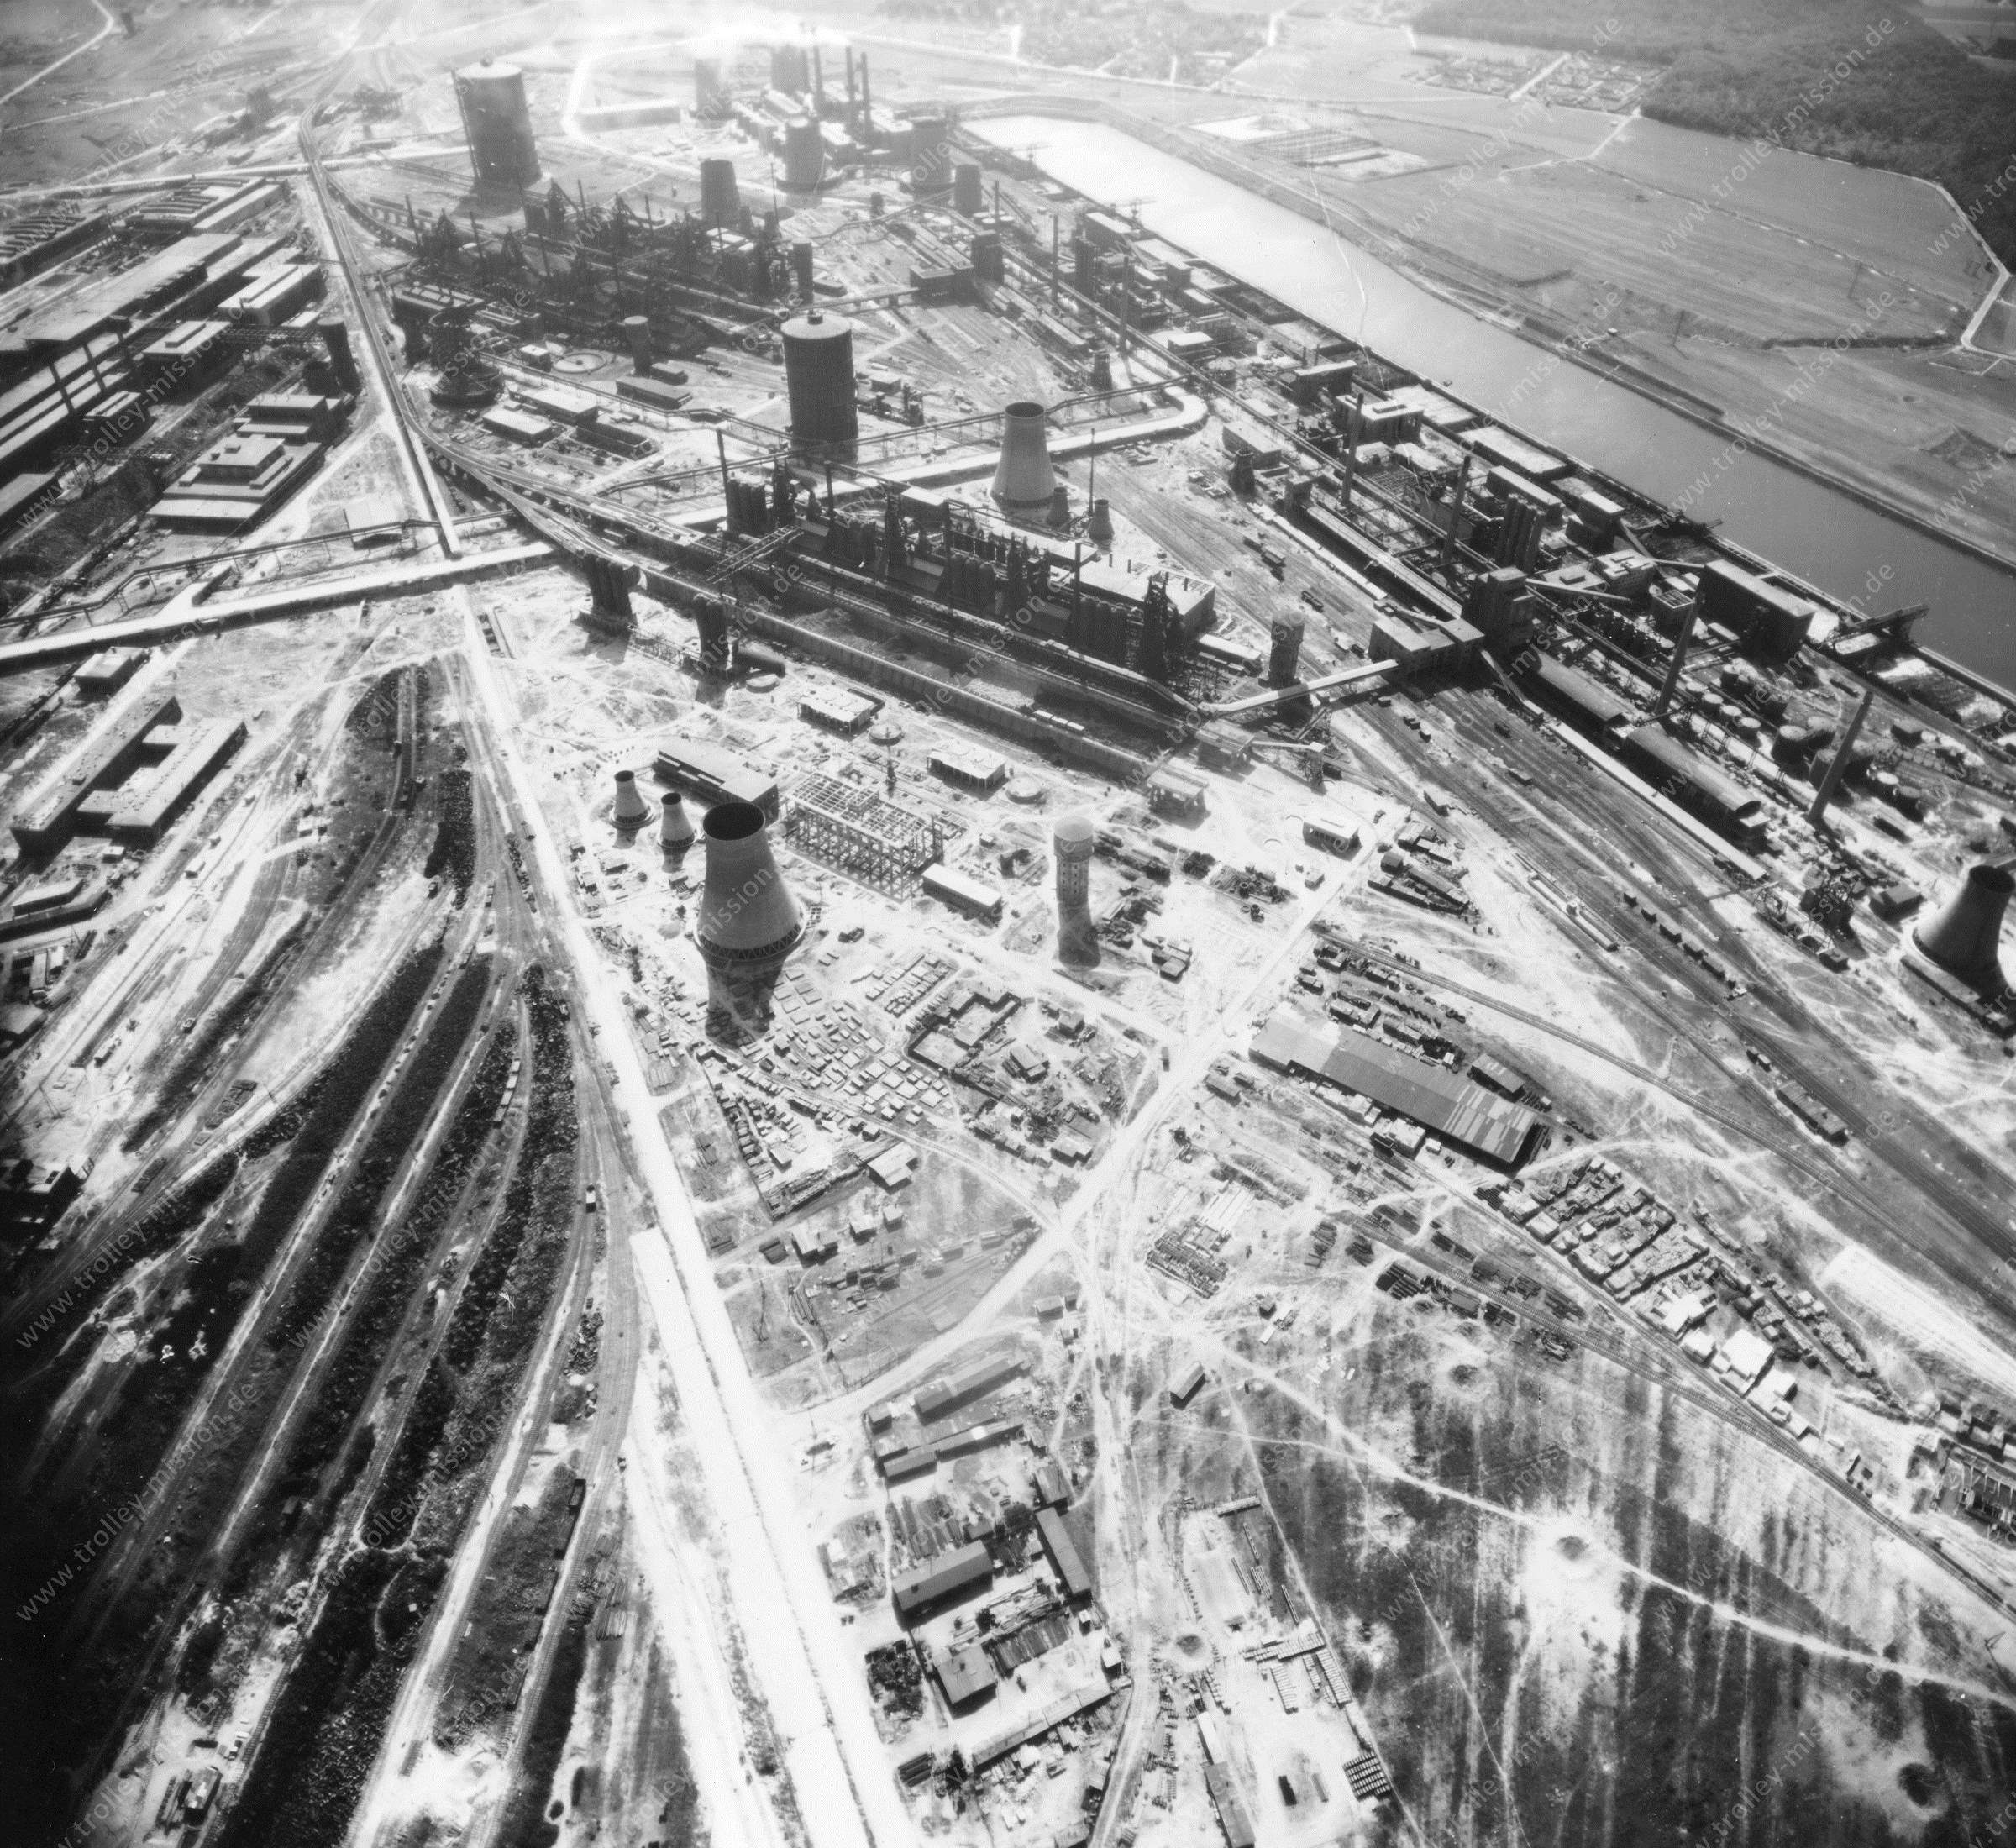 Salzgitter Reichswerke Hermann Göring from above: Aerial view after Allied air raids in World War II